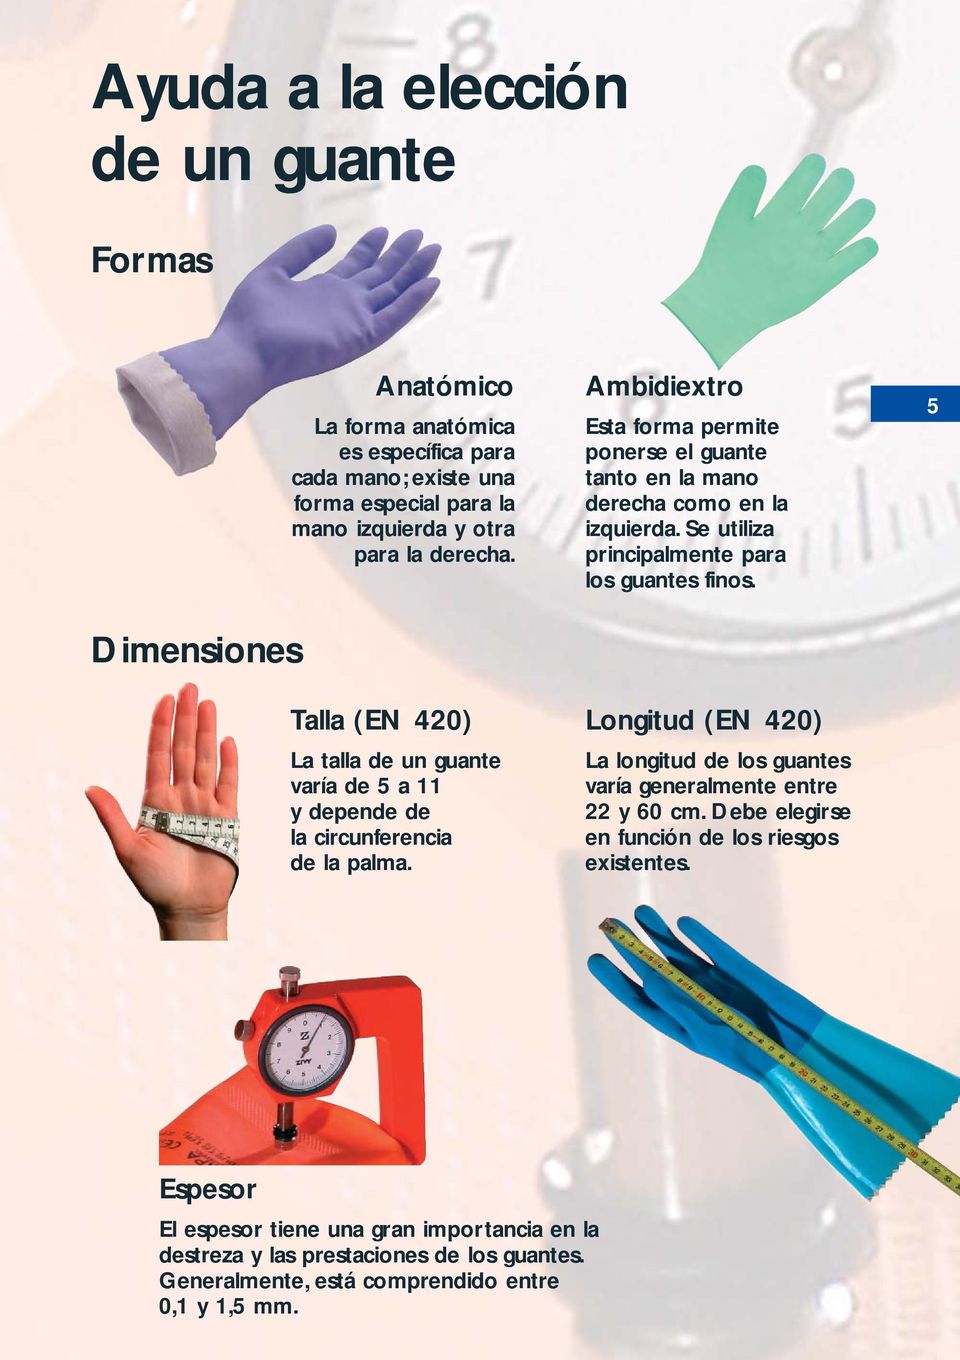 Ambidiextro Esta forma permite ponerse el guante tanto en la mano derecha como en la izquierda. Se utiliza principalmente para los guantes finos.